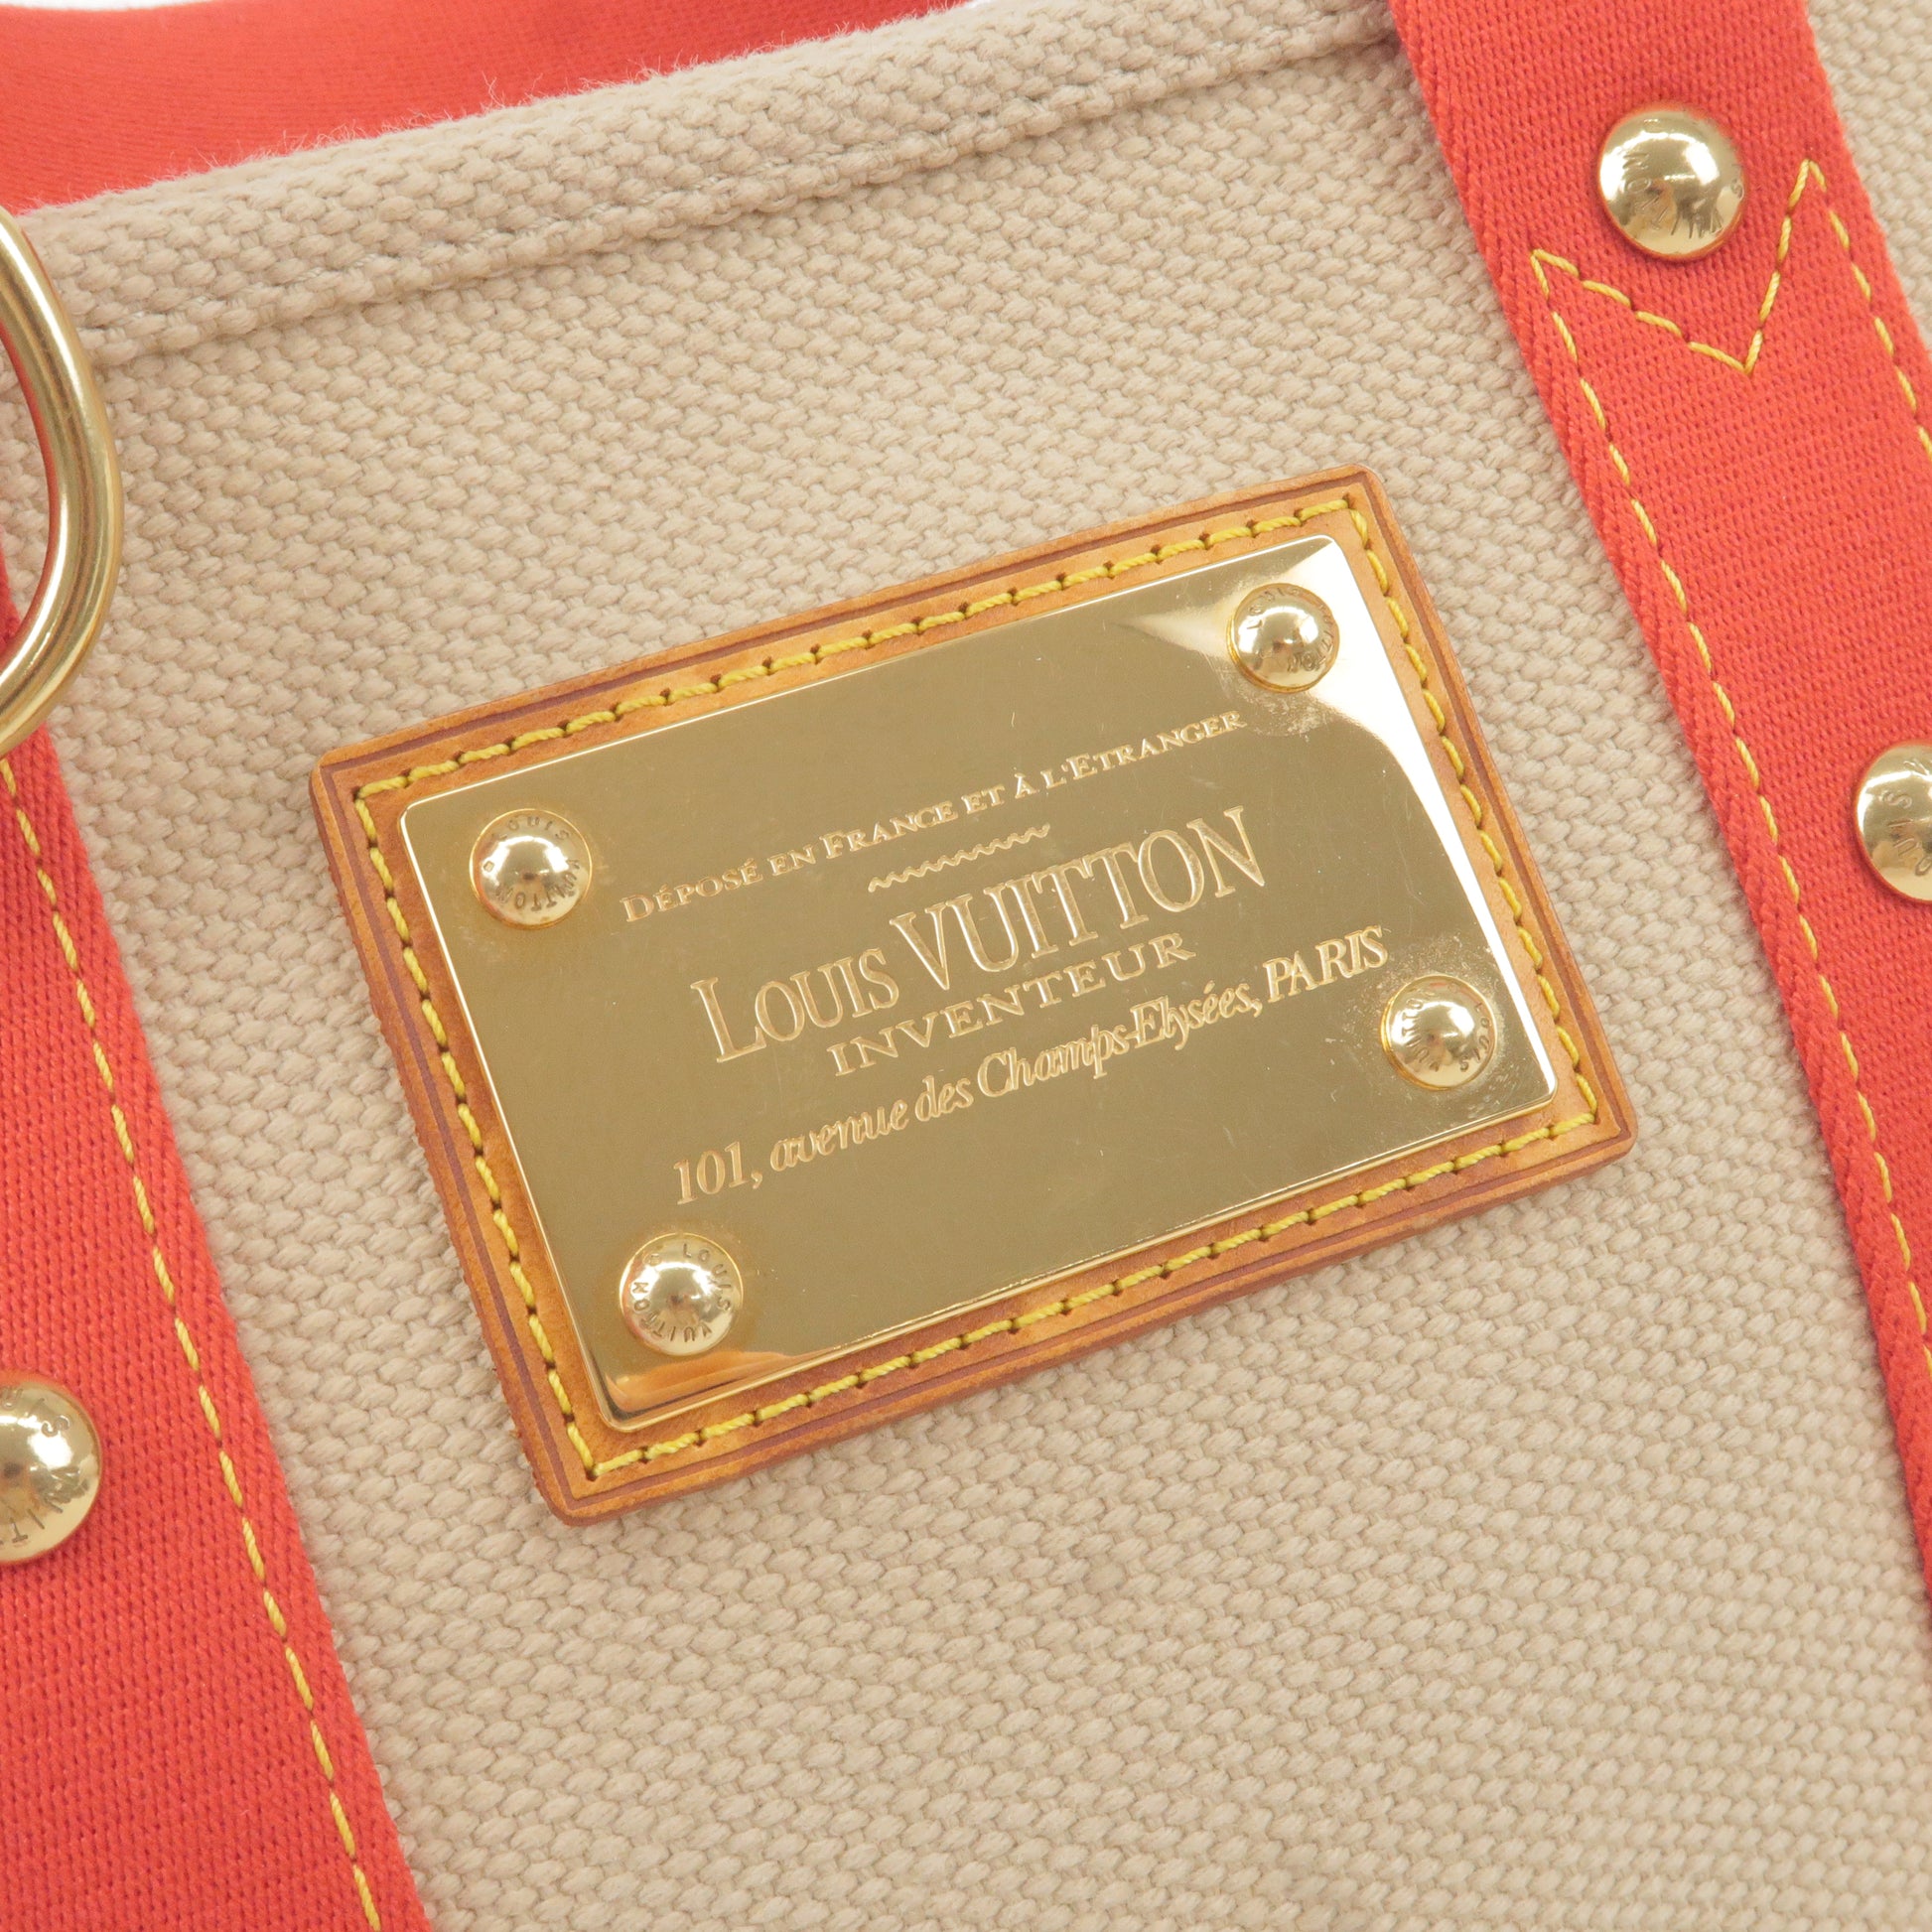 Louis Vuitton Antigua Cabas Pink Canvas Shoulder Bag PM Louis